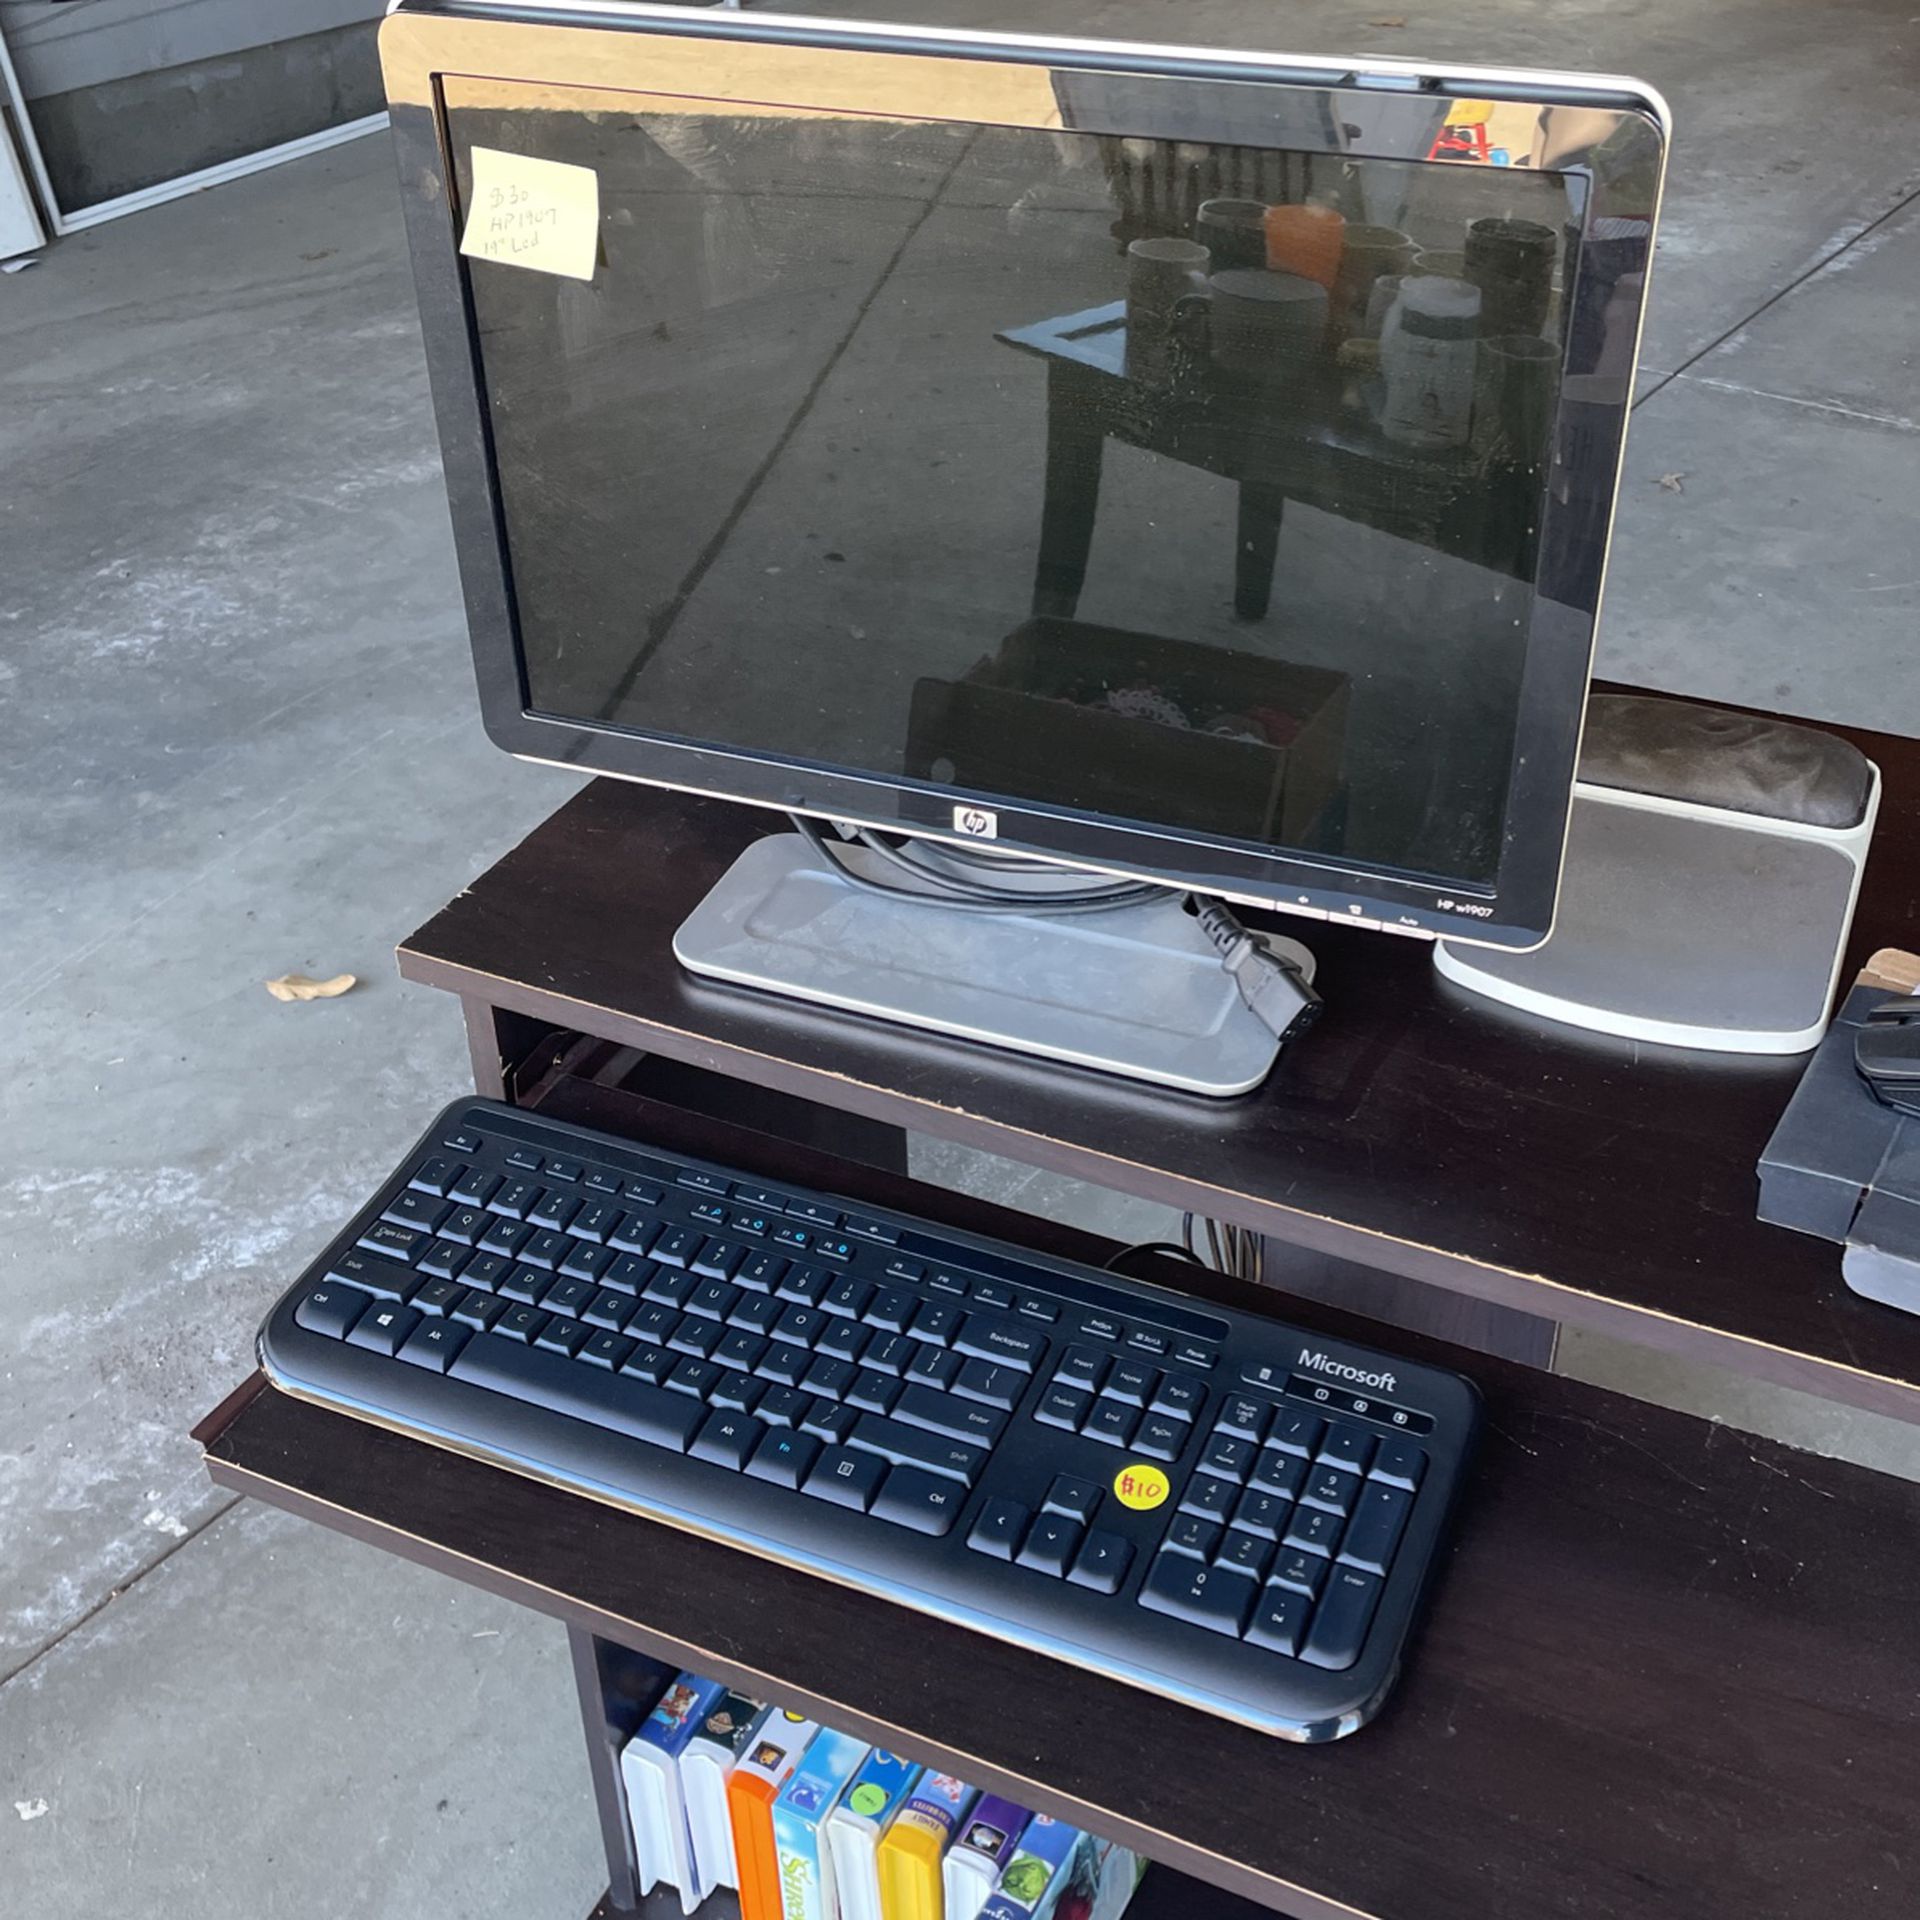 HPw1907 Monitor And Keyboard 